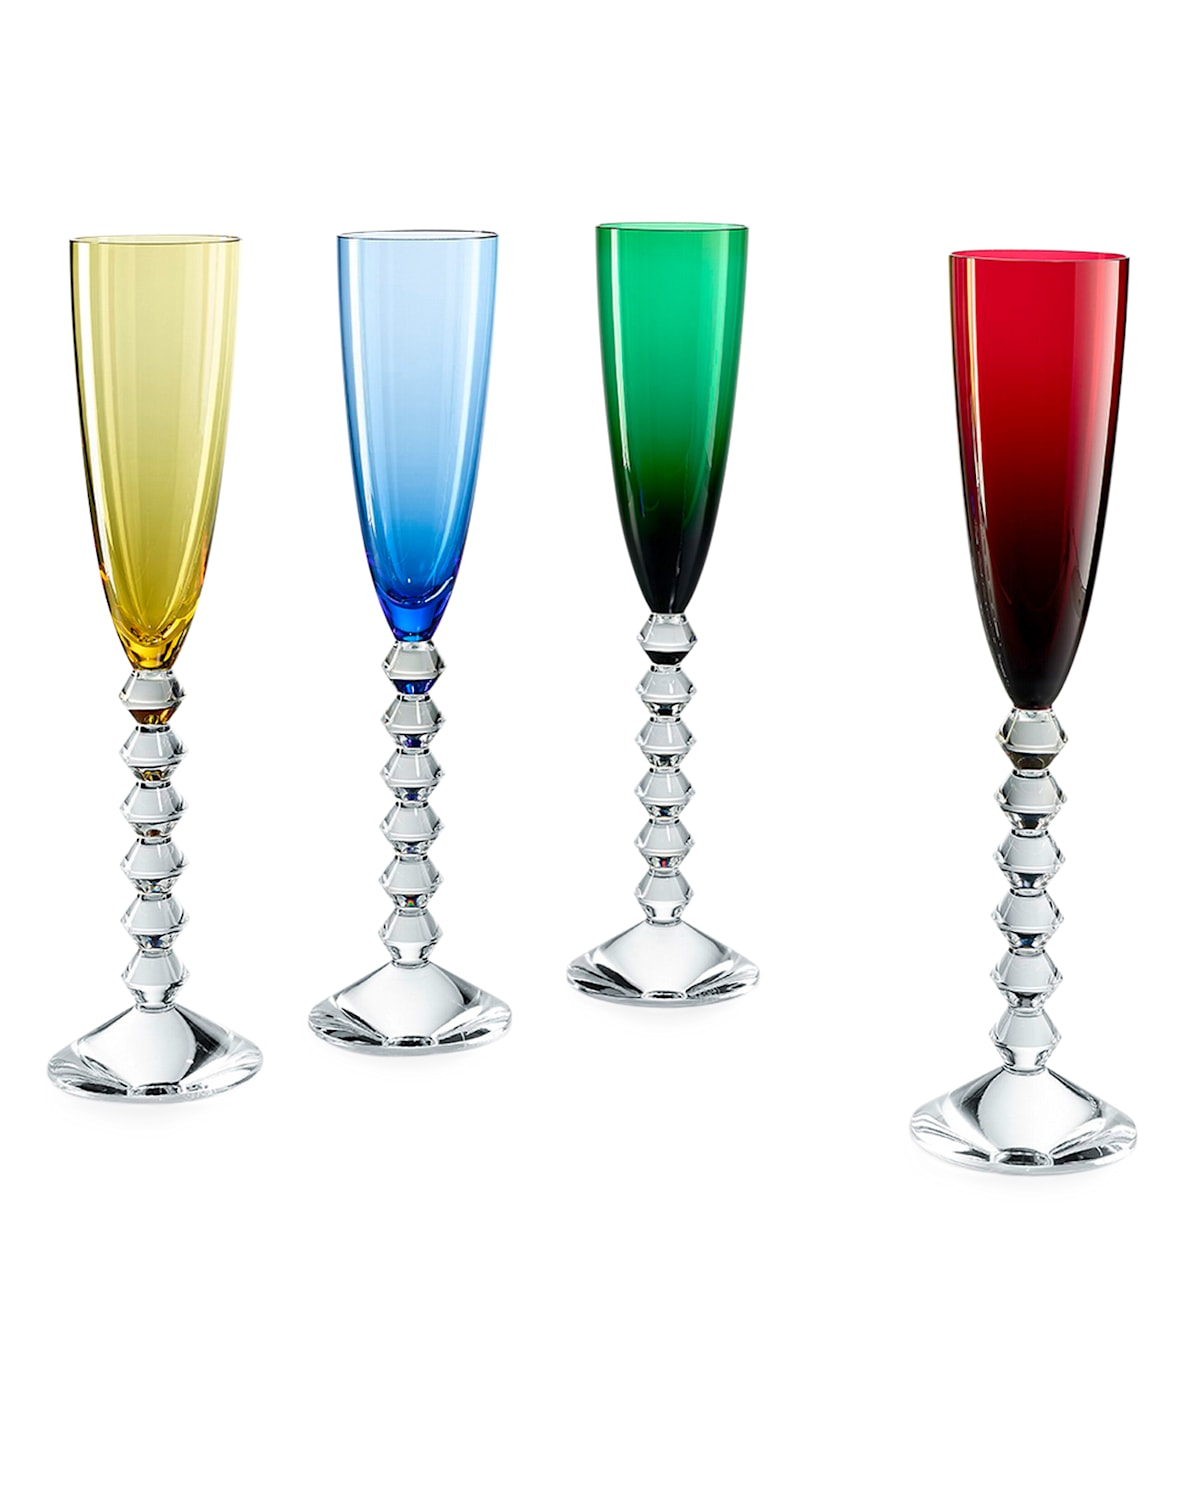 Vega Flutissmino Champagne Flutes, Set of 4